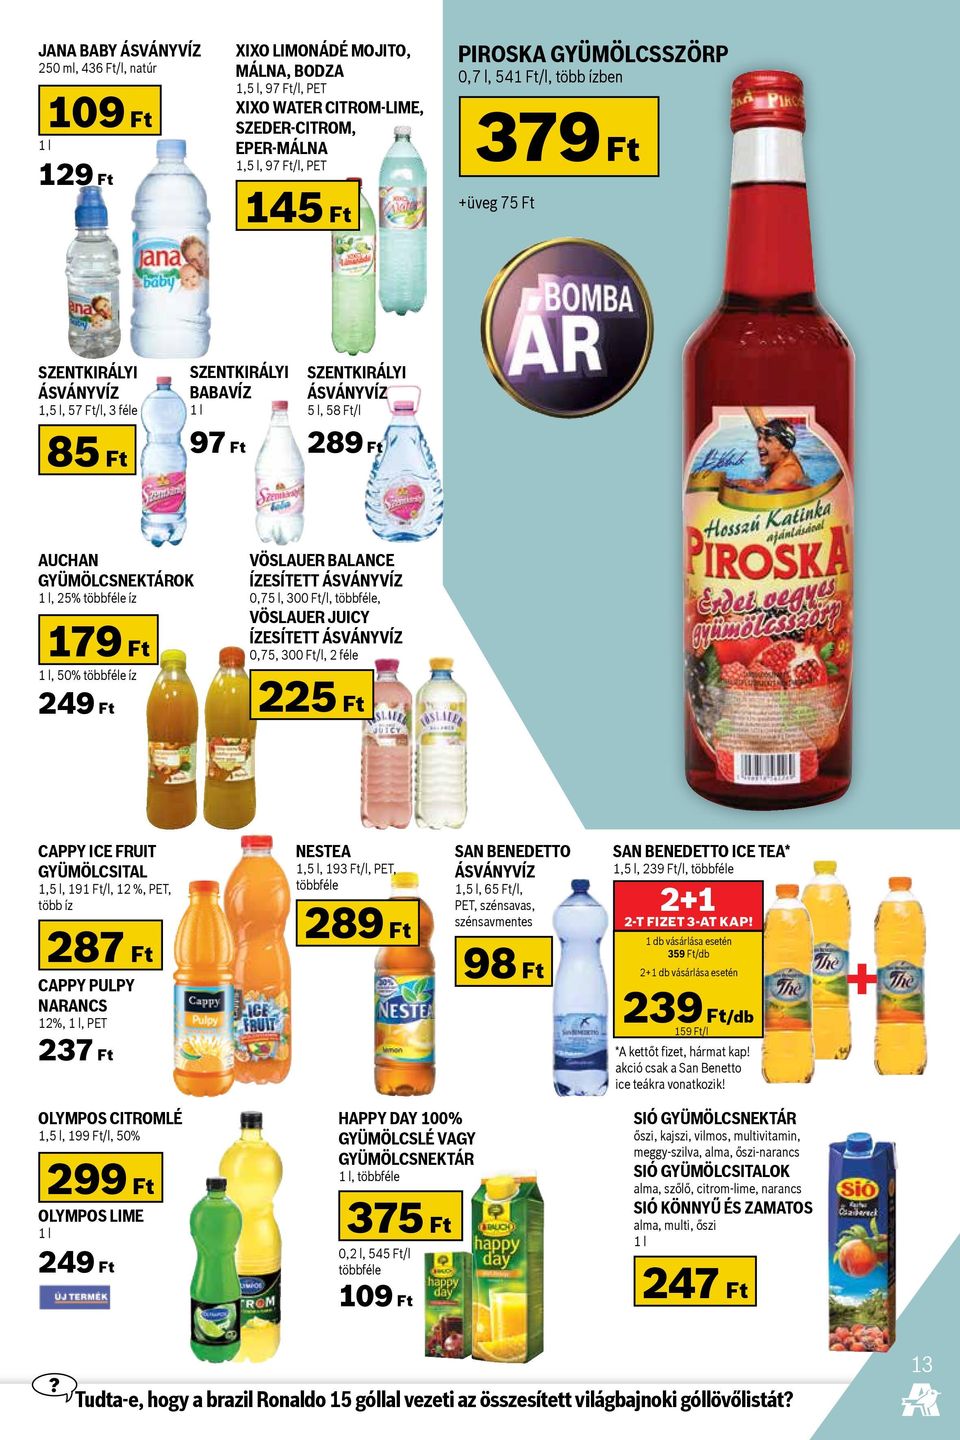 Auchan gyümölcsnektárok 1 l, 25% többféle íz 179 Ft 1 l, 50% többféle íz 249 Ft Vöslauer Balance ízesített ásványvíz 0,75 l, 300 Ft/l, többféle, Vöslauer Juicy ízesített ásványvíz 0,75, 300 Ft/l, 2